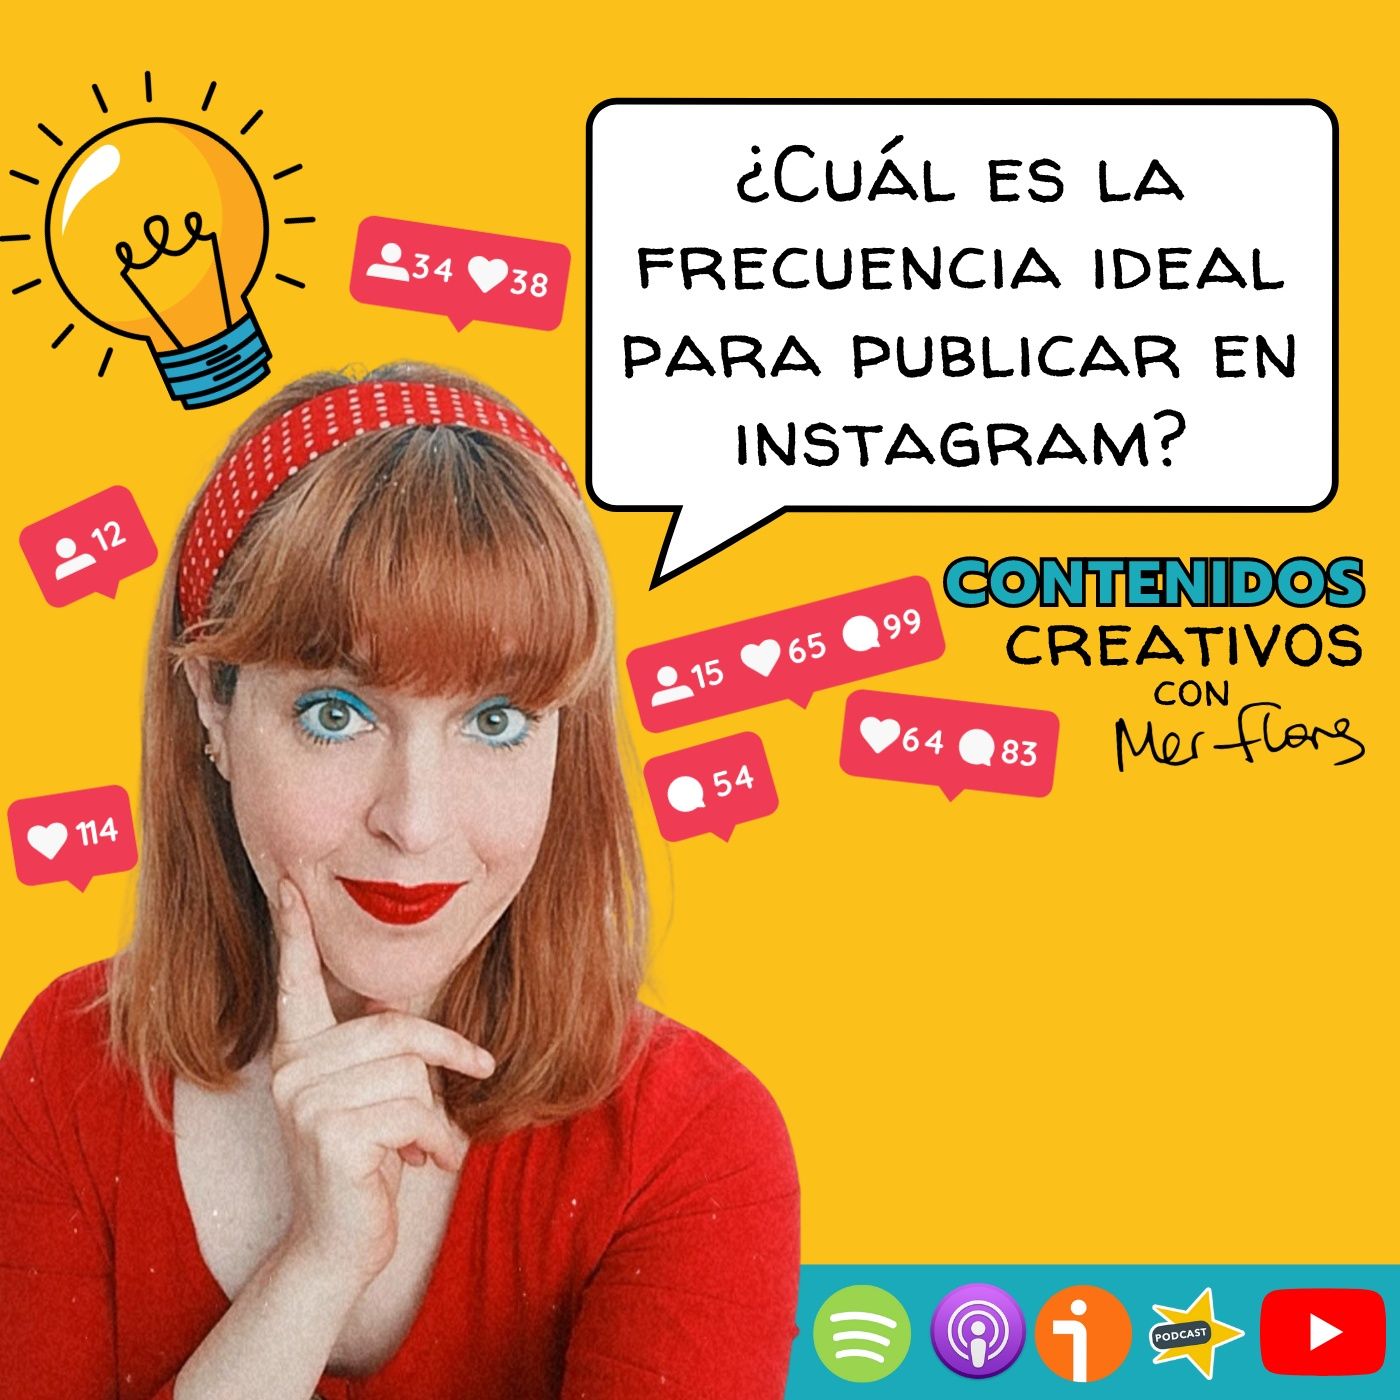 13. ¿Cuál es la frecuencia ideal para publicar en Instagram?